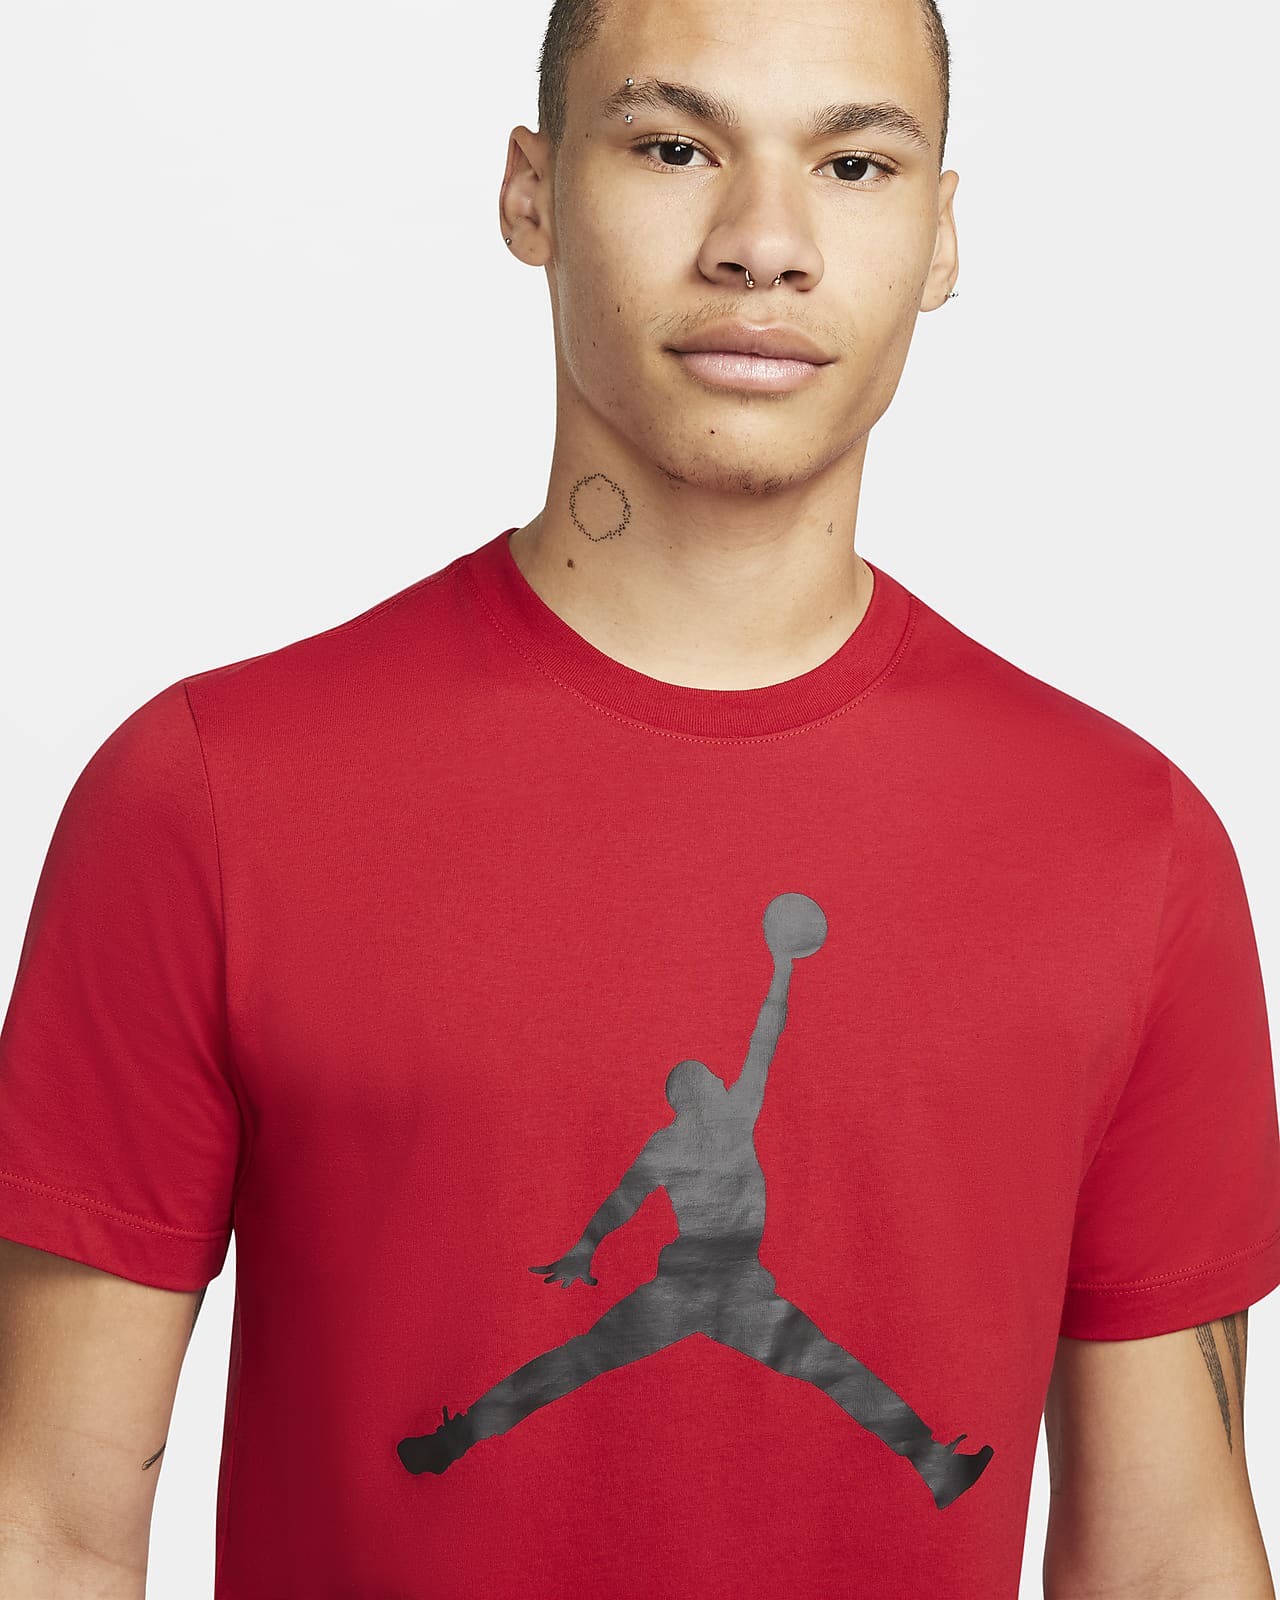 Jordan Jumpman Tee-shirt